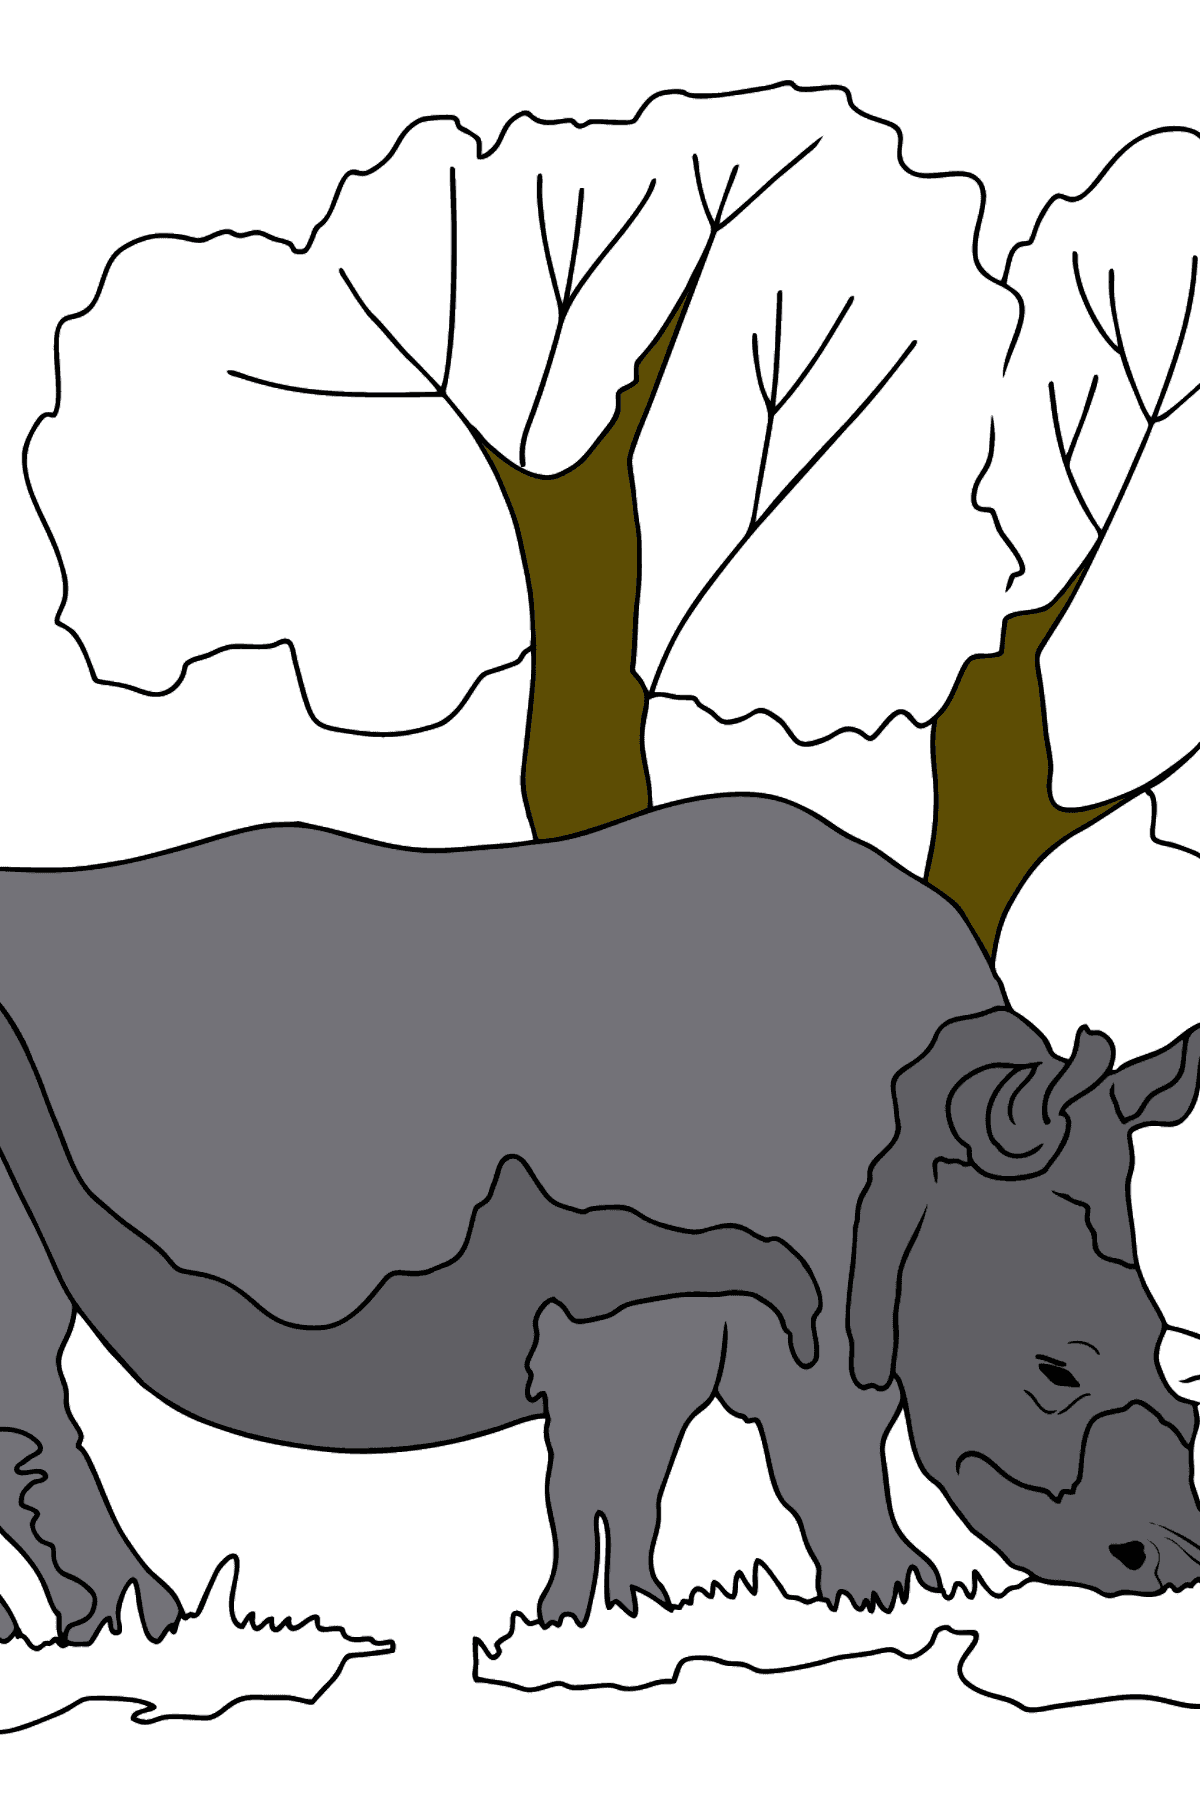 Disegno Facile da colorare Rhino - Disegni da colorare per bambini